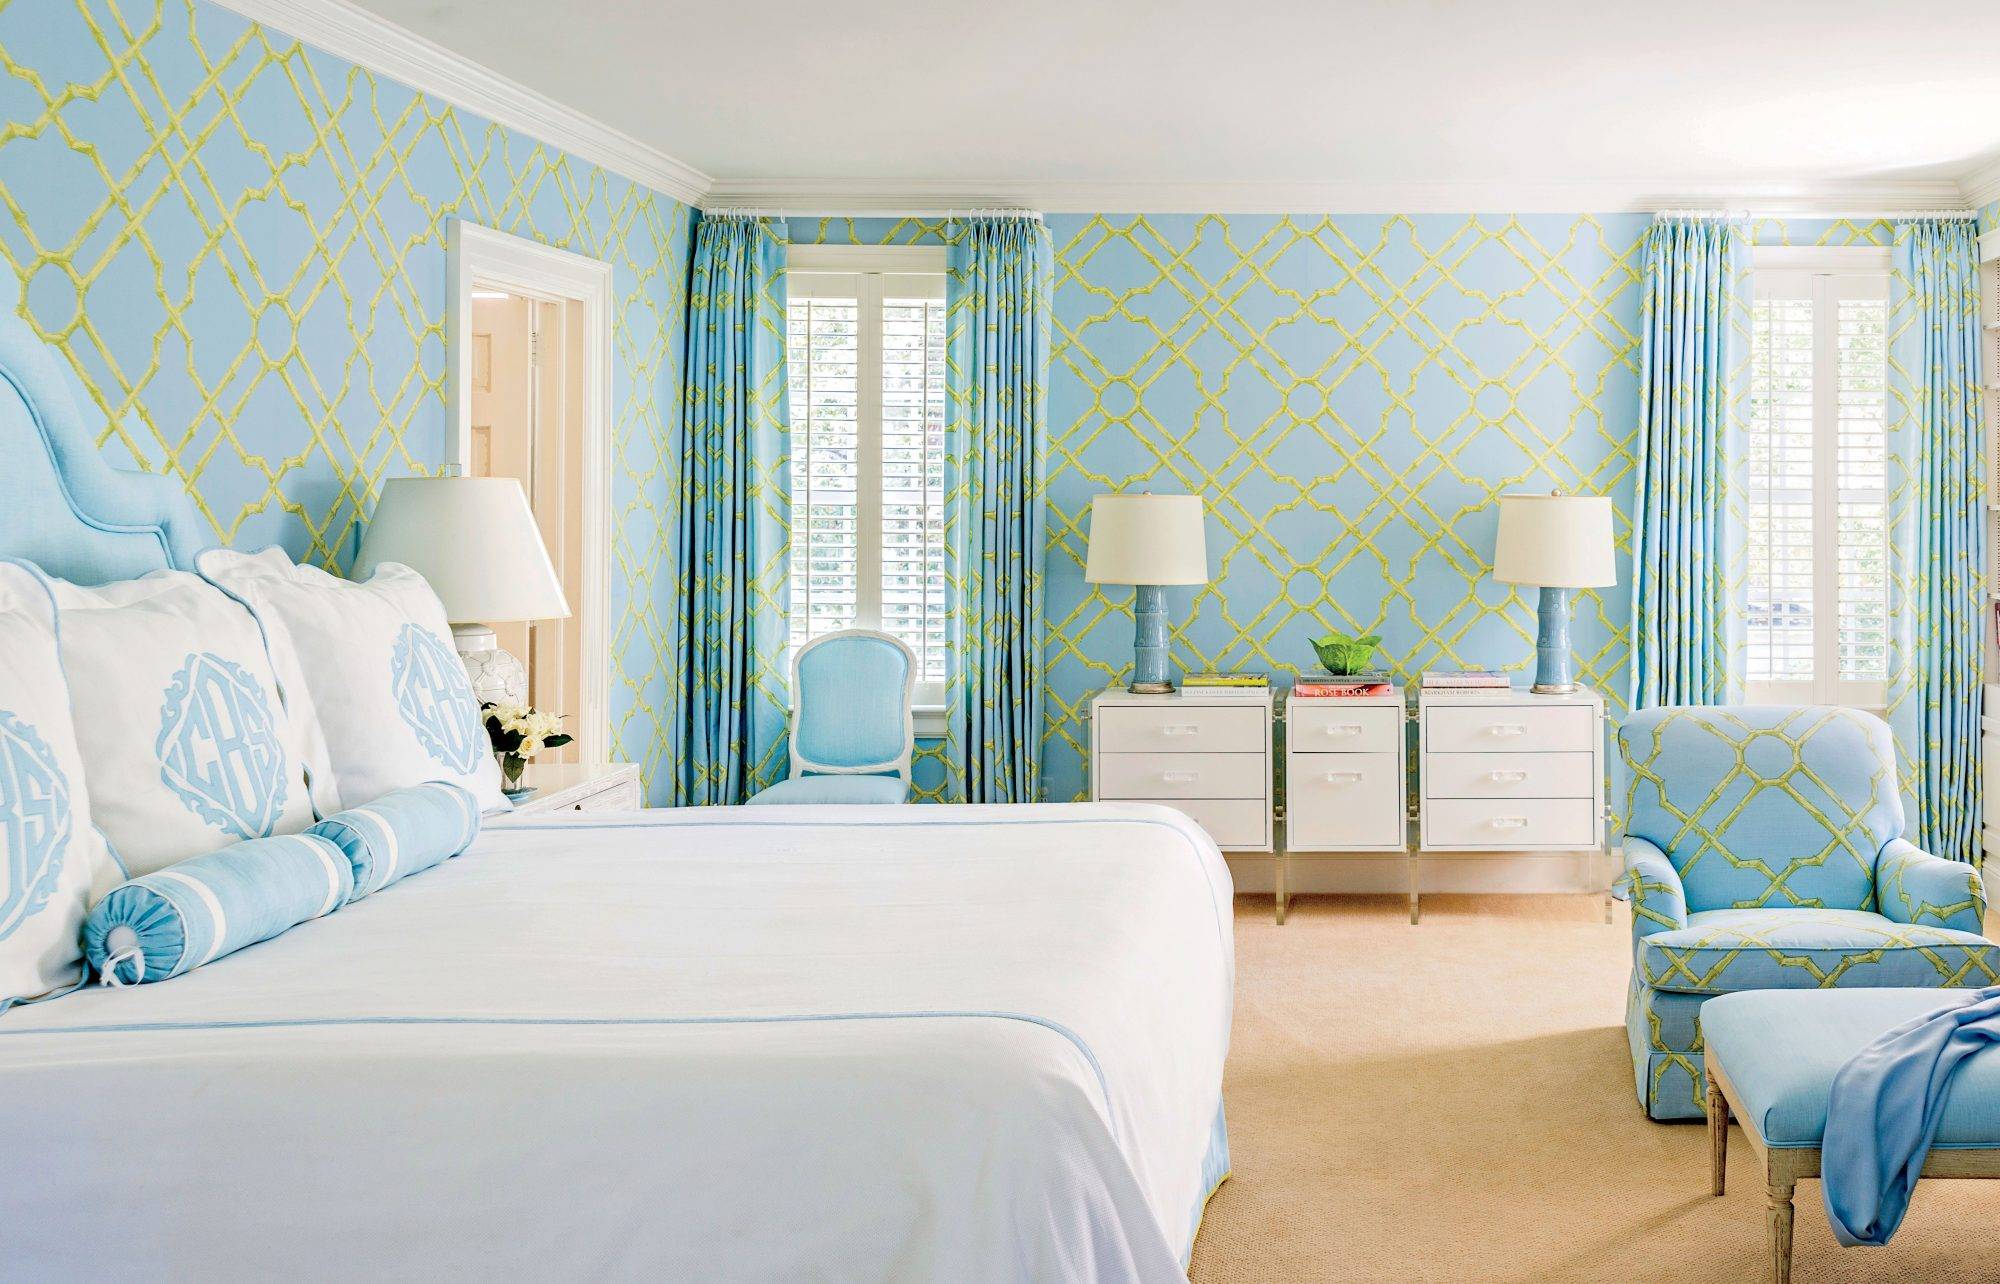 Голубые обои в интерьере (55 фото): бело-синие варианты для стен в гостиной, нежные оттенки цвета с золотом, узор в полоску, с чем сочетаются